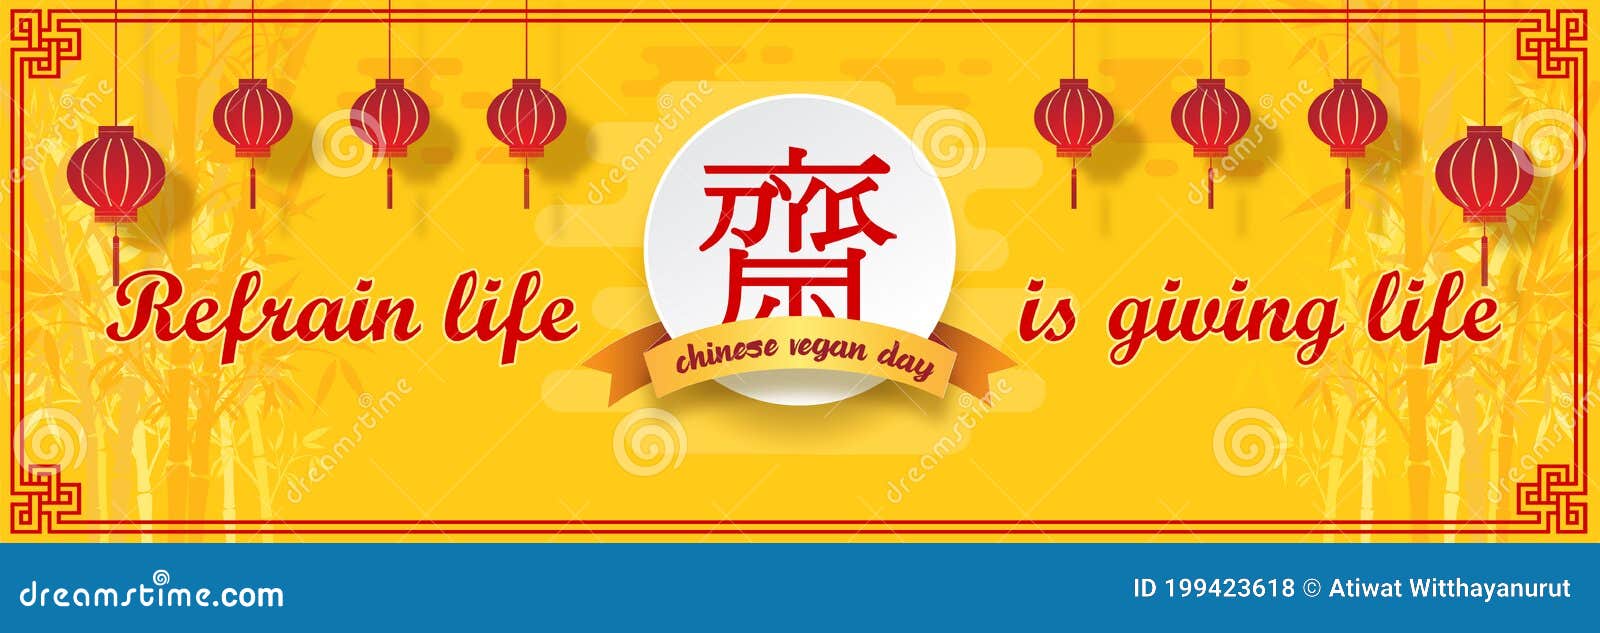 Các thẻ và áp phích lễ hội chay Trung Hoa sẽ mang lại cảm giác tình cảm và ý nghĩa lịch sử. Hãy xem hình ảnh liên quan để tìm hiểu về các sản phẩm độc đáo này và trải nghiệm không khí lễ hội chay đặc biệt.